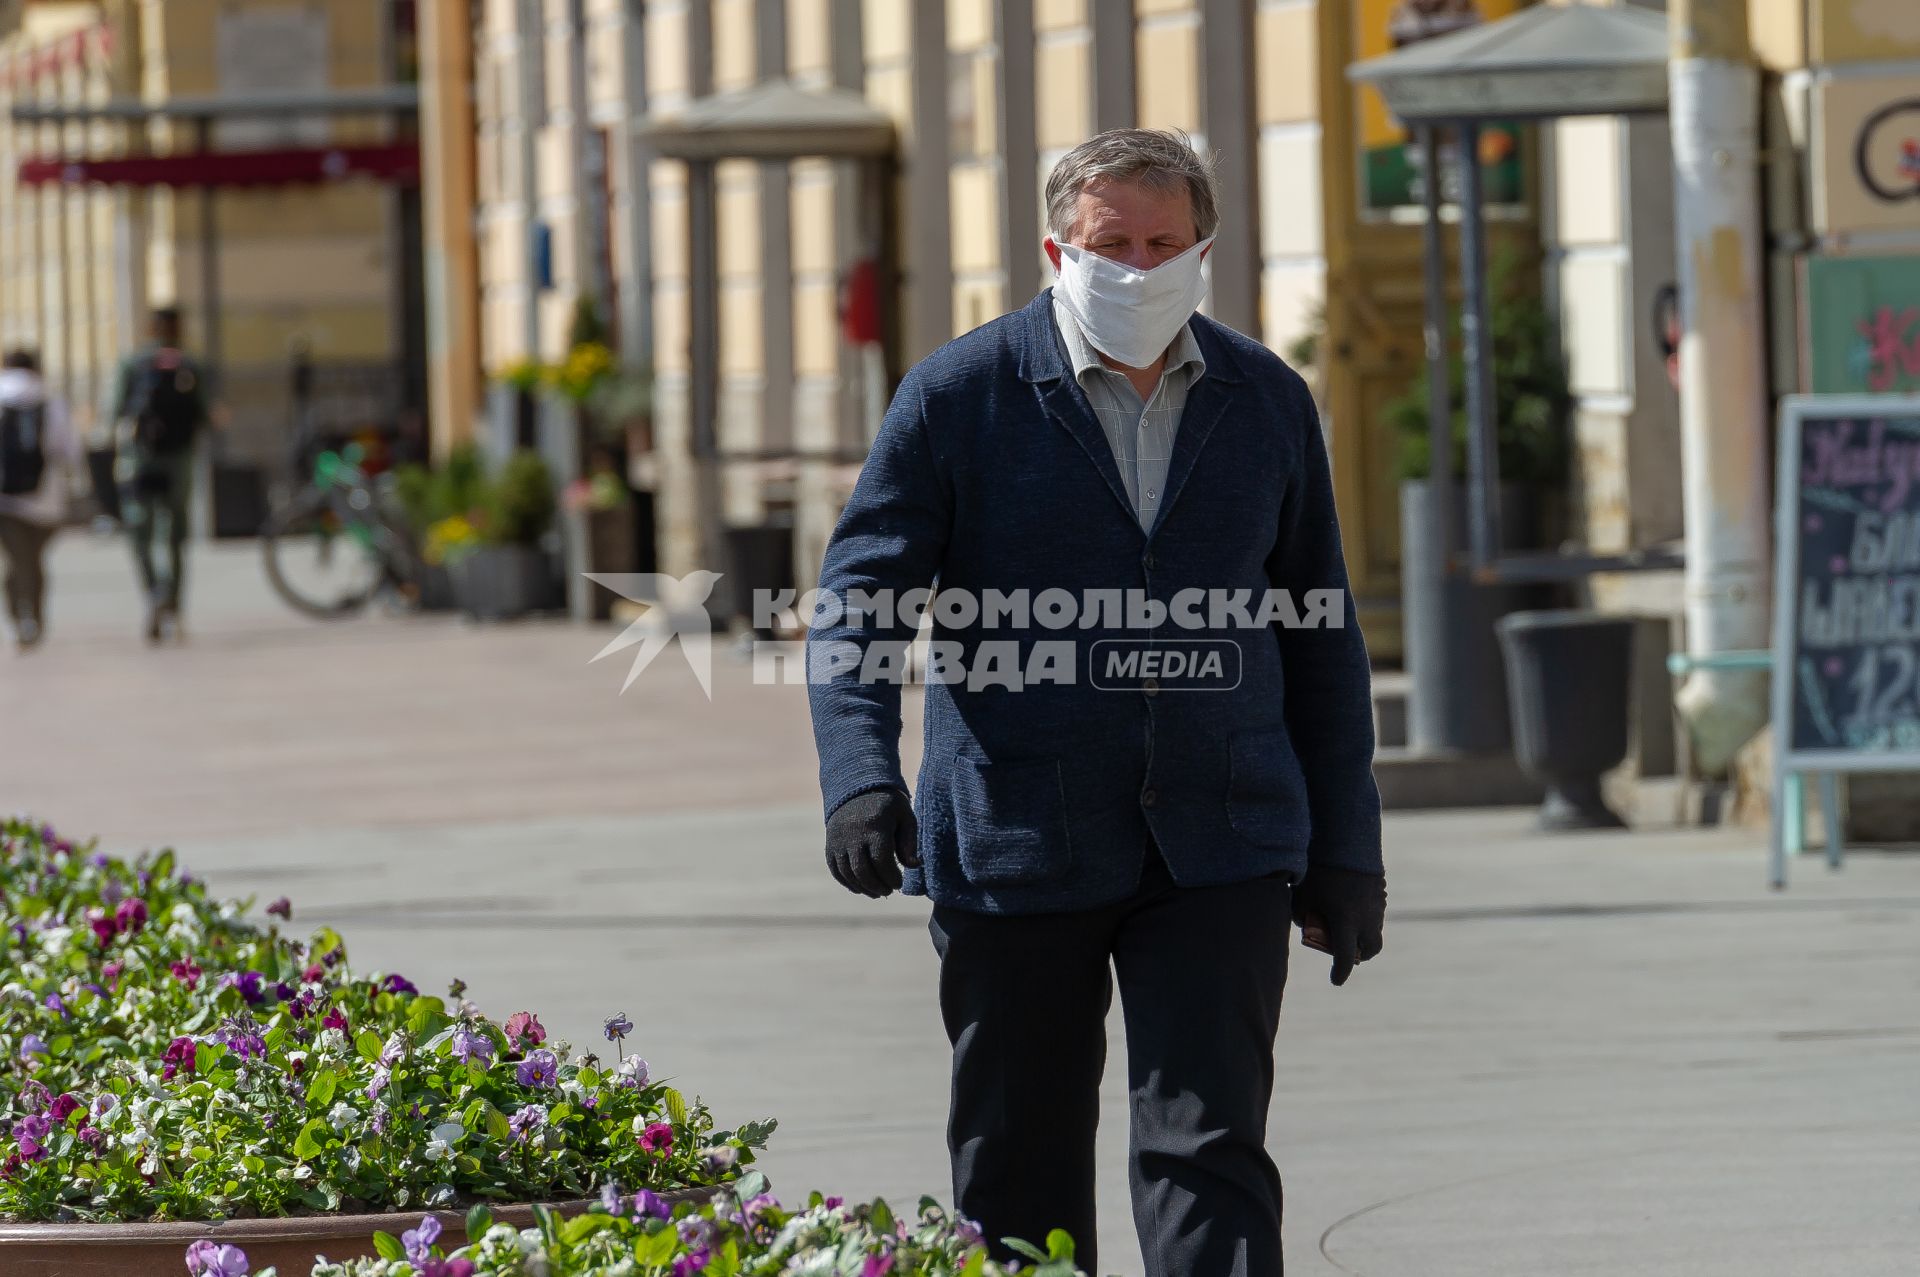 Санкт-Петербург. Мужчина в медицинской маске на улице.